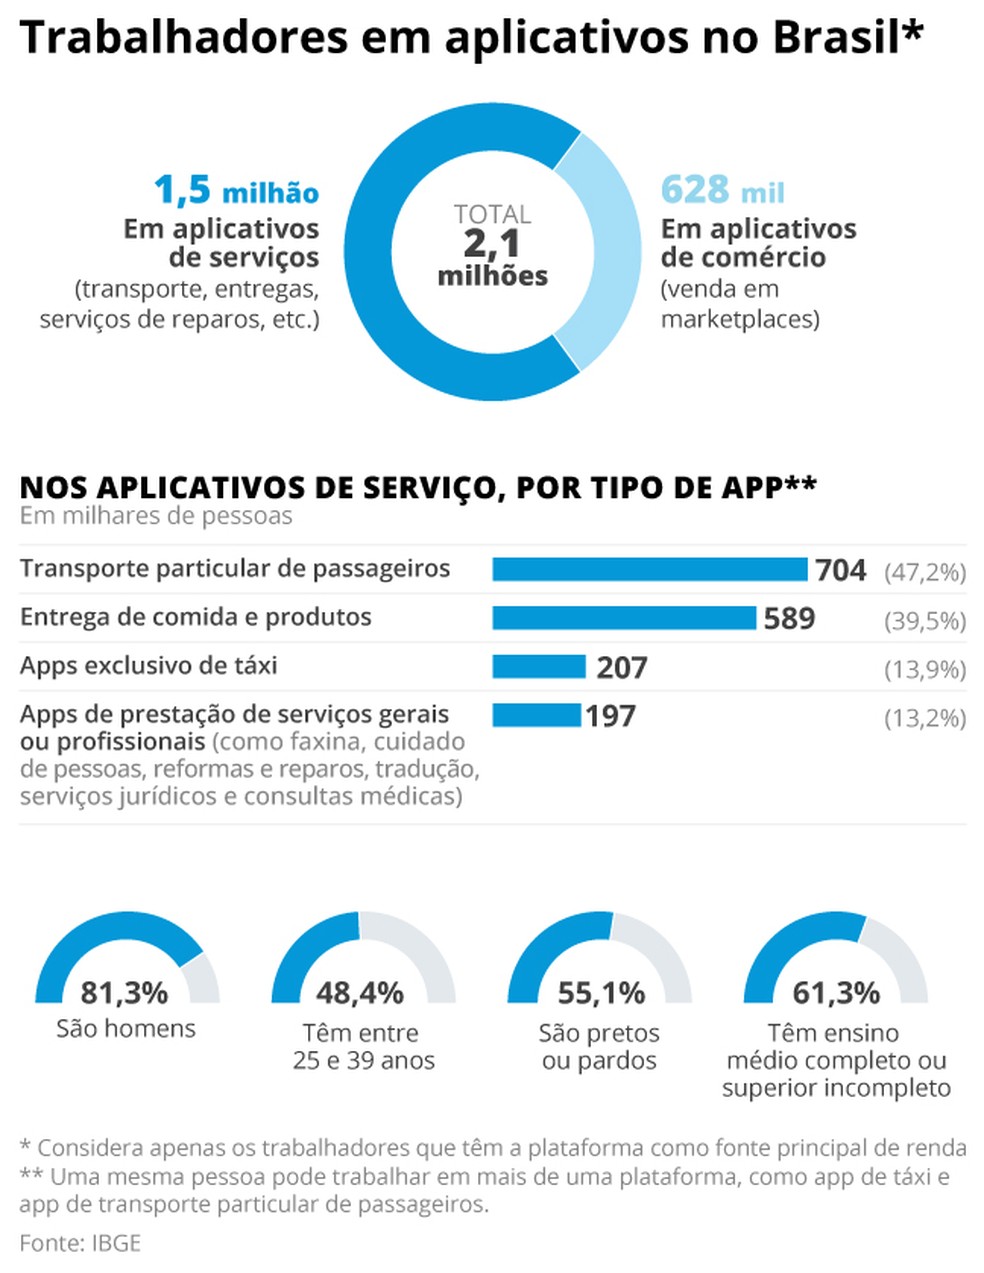 Total de trabalhadores em aplicativos no Brasil — Foto: Arte O Globo